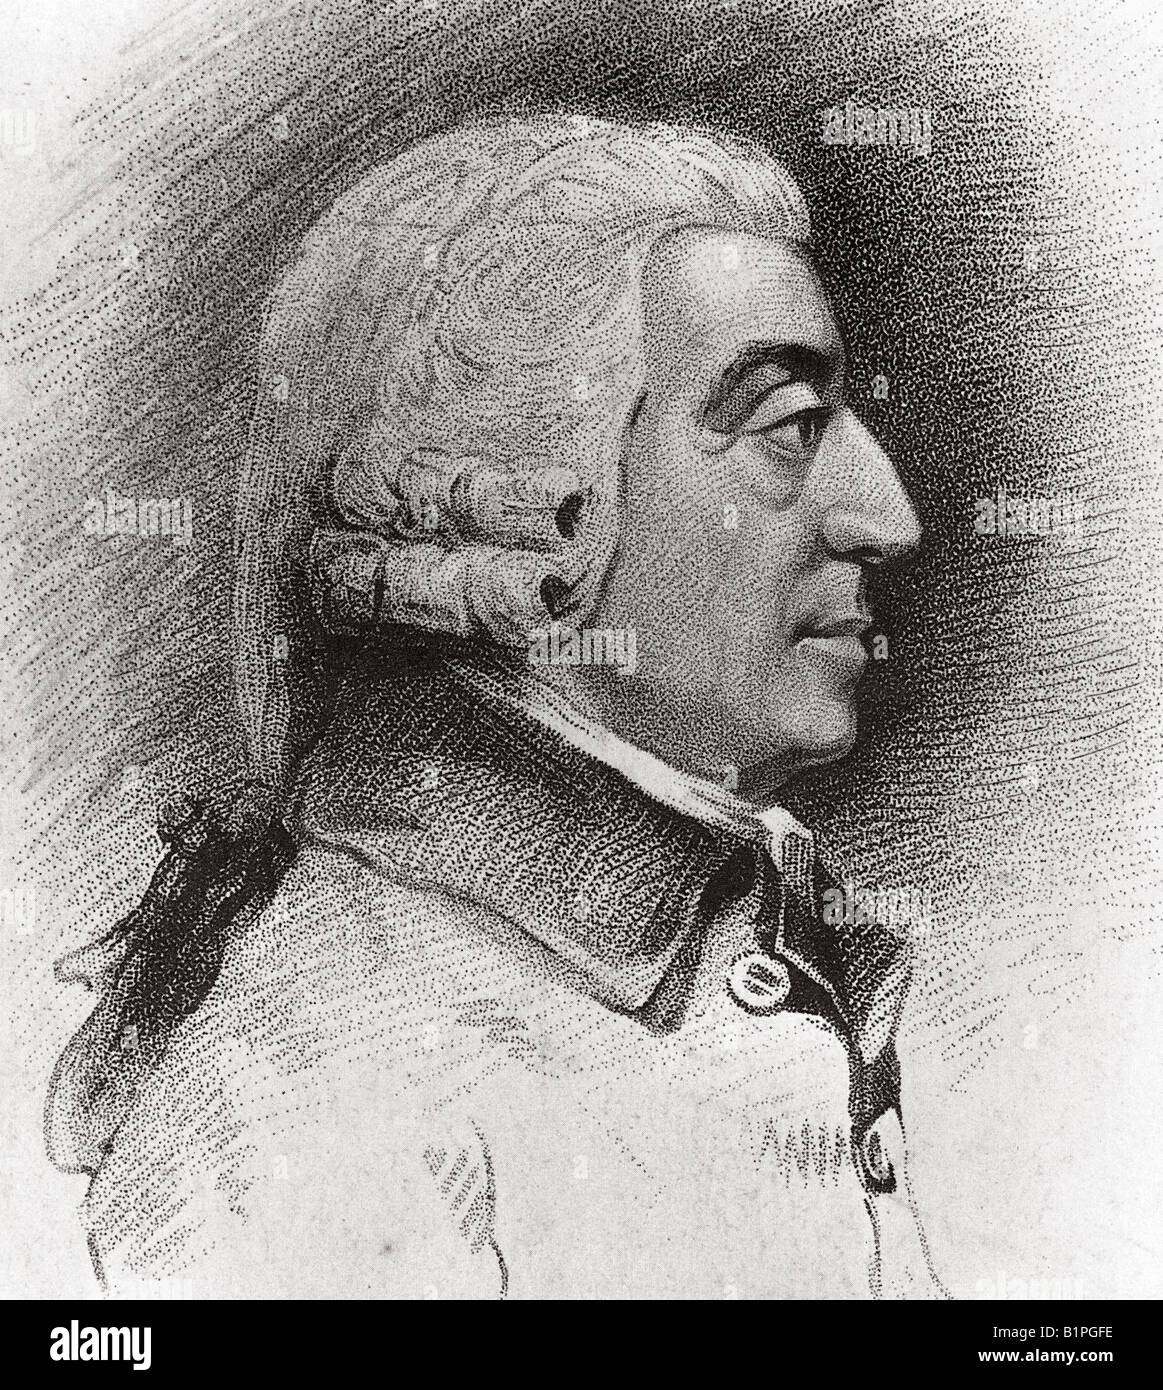 ADAM SMITH Scottish economist and philosopher 1723 to 1790 Stock Photo